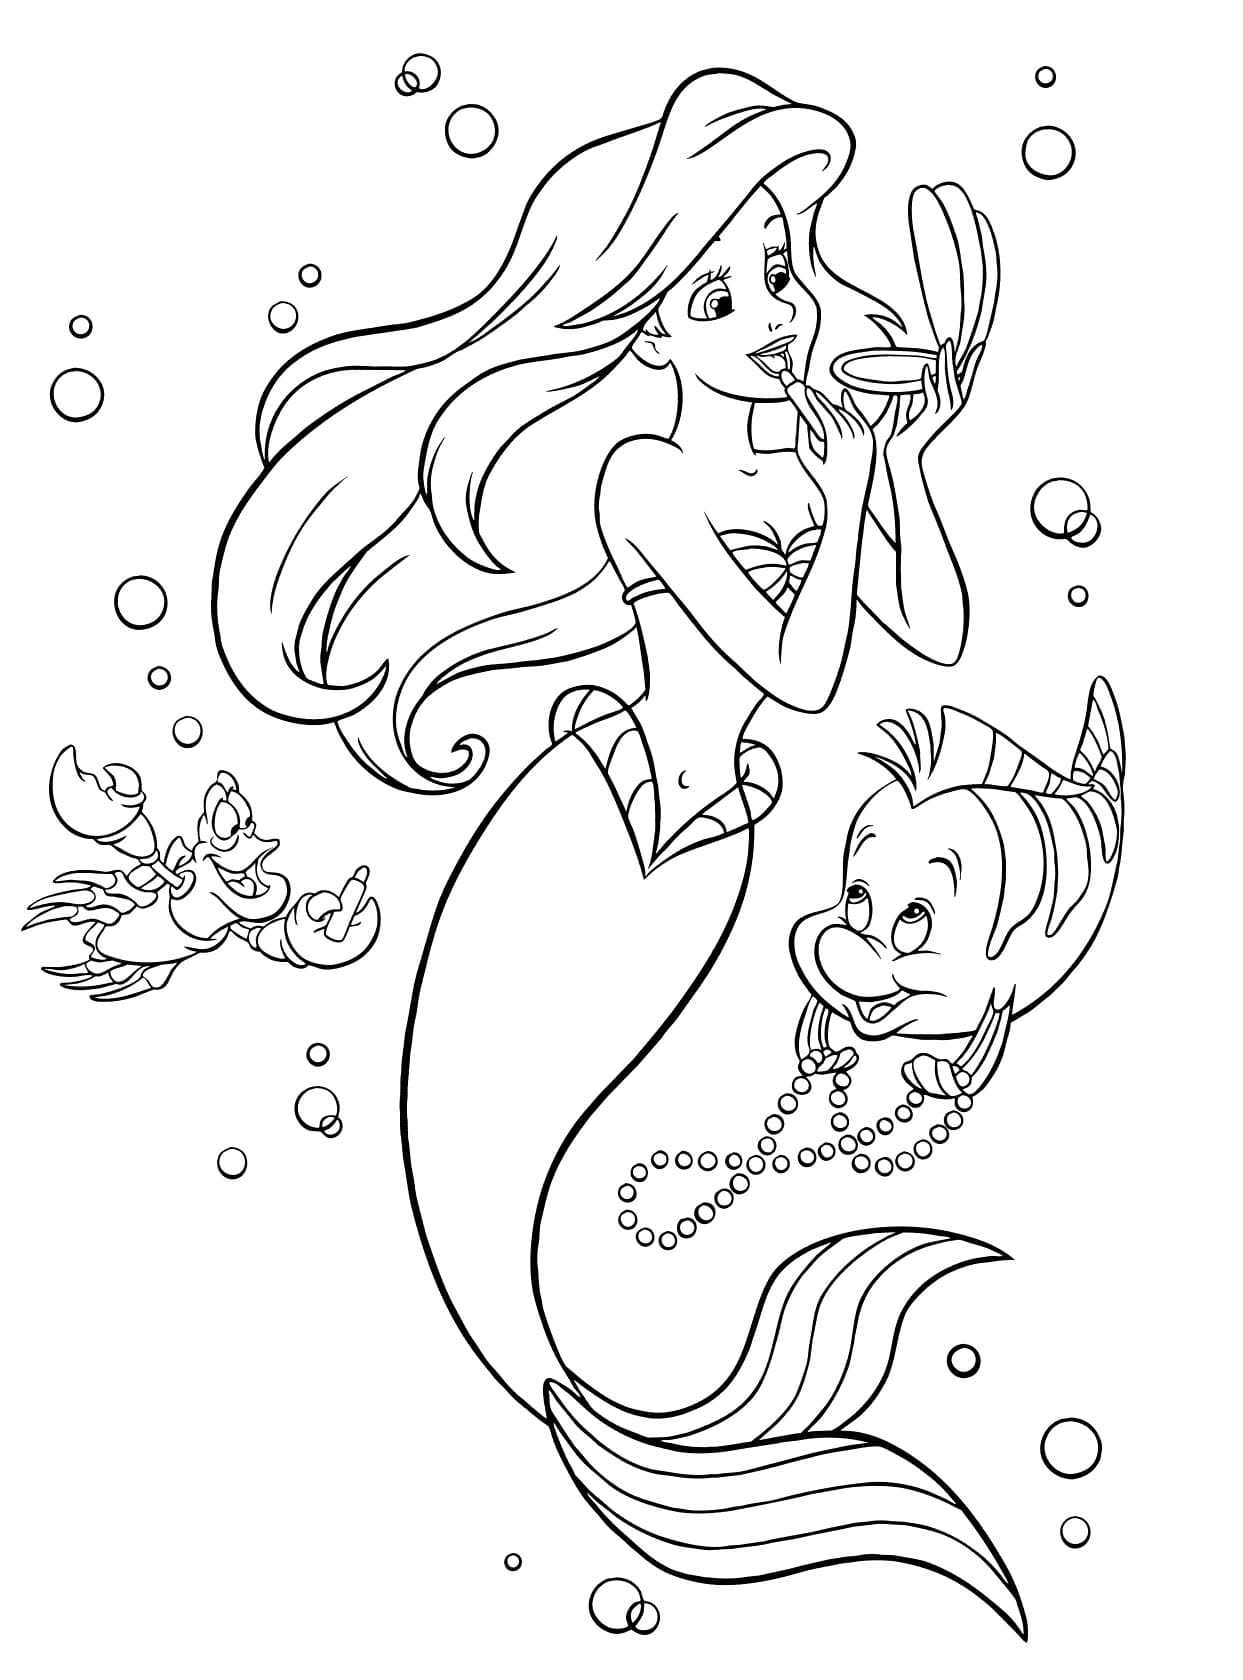 Dibujo de Ariel 27 de La sirenita para imprimir y colorear